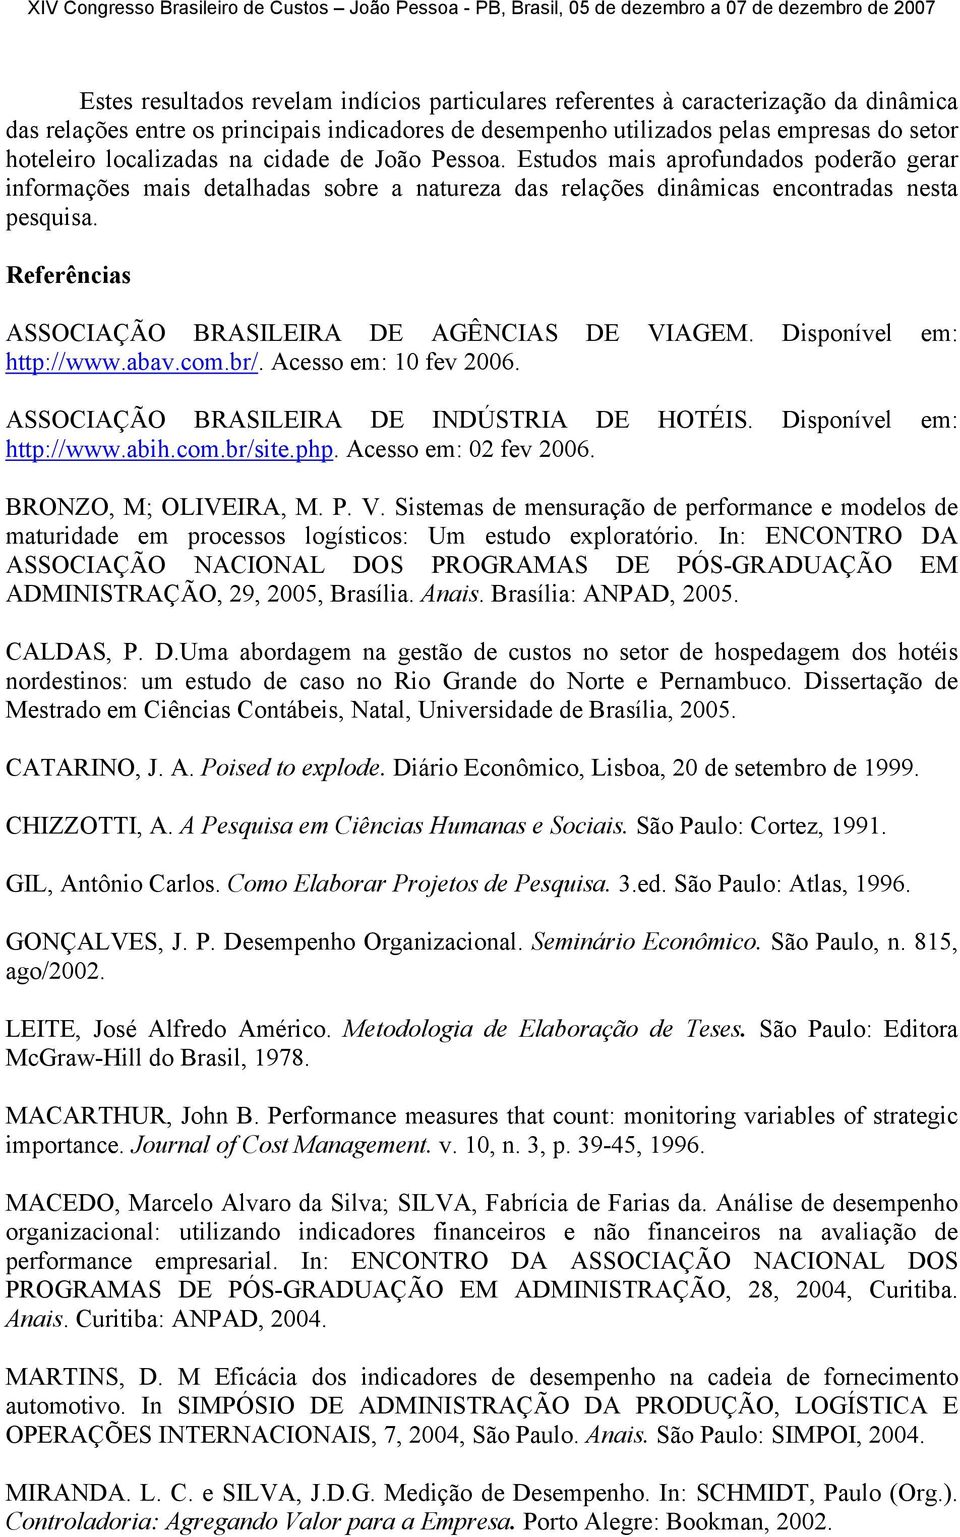 Referências ASSOCIAÇÃO BRASILEIRA DE AGÊNCIAS DE VIAGEM. Disponível em: http://www.abav.com.br/. Acesso em: 10 fev 2006. ASSOCIAÇÃO BRASILEIRA DE INDÚSTRIA DE HOTÉIS. Disponível em: http://www.abih.